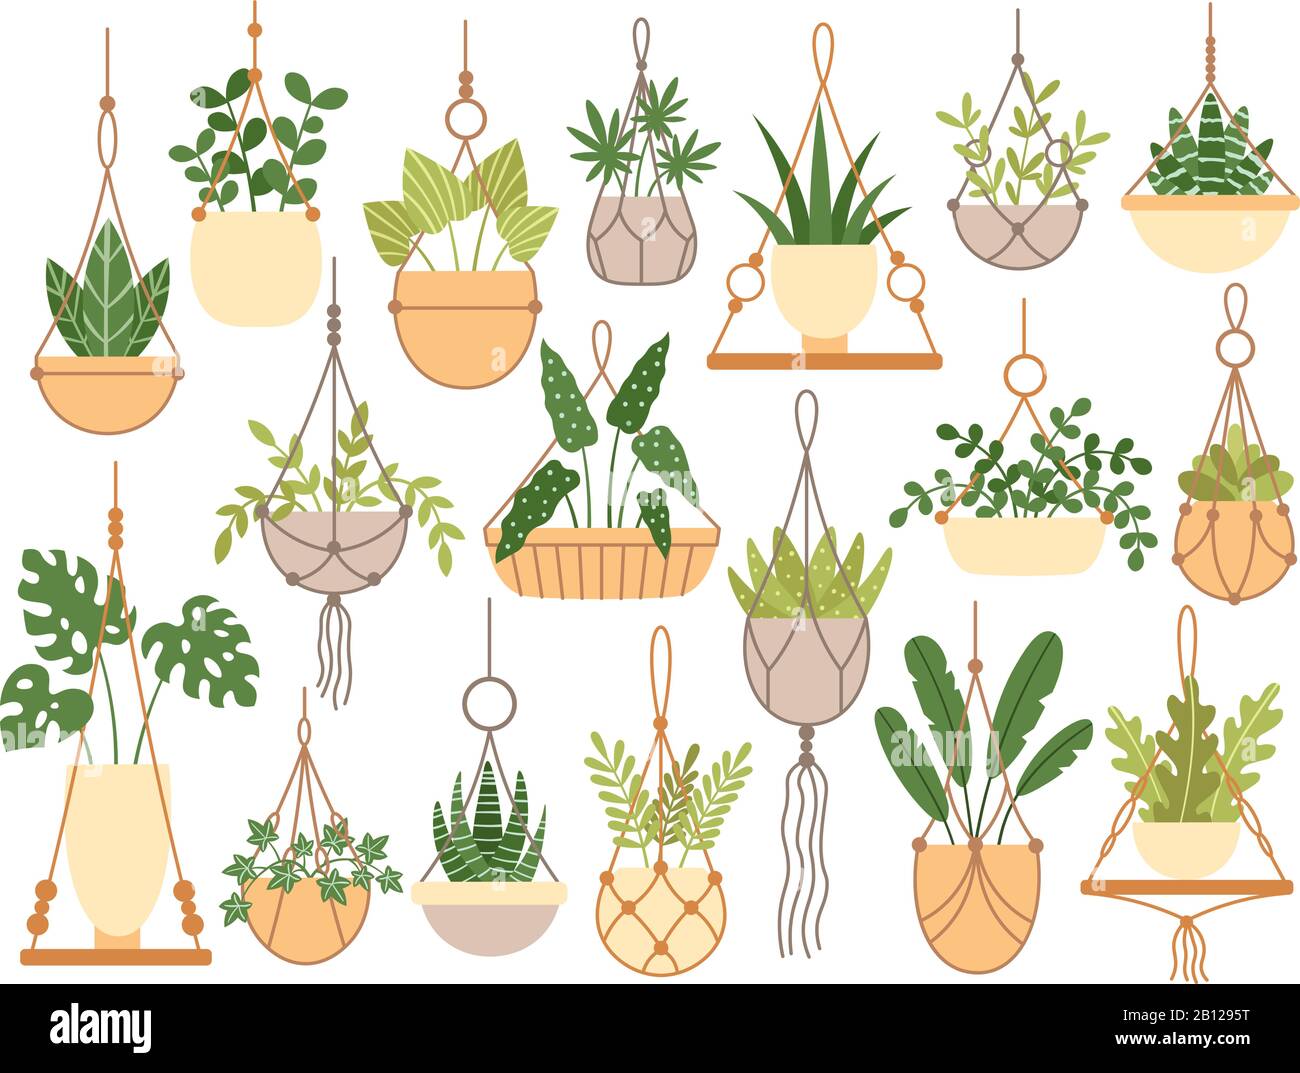 Plants in hanging pots. Decorative macrame handmade hangers for flower pot, hang indoor plants isolated vector set Stock Vector